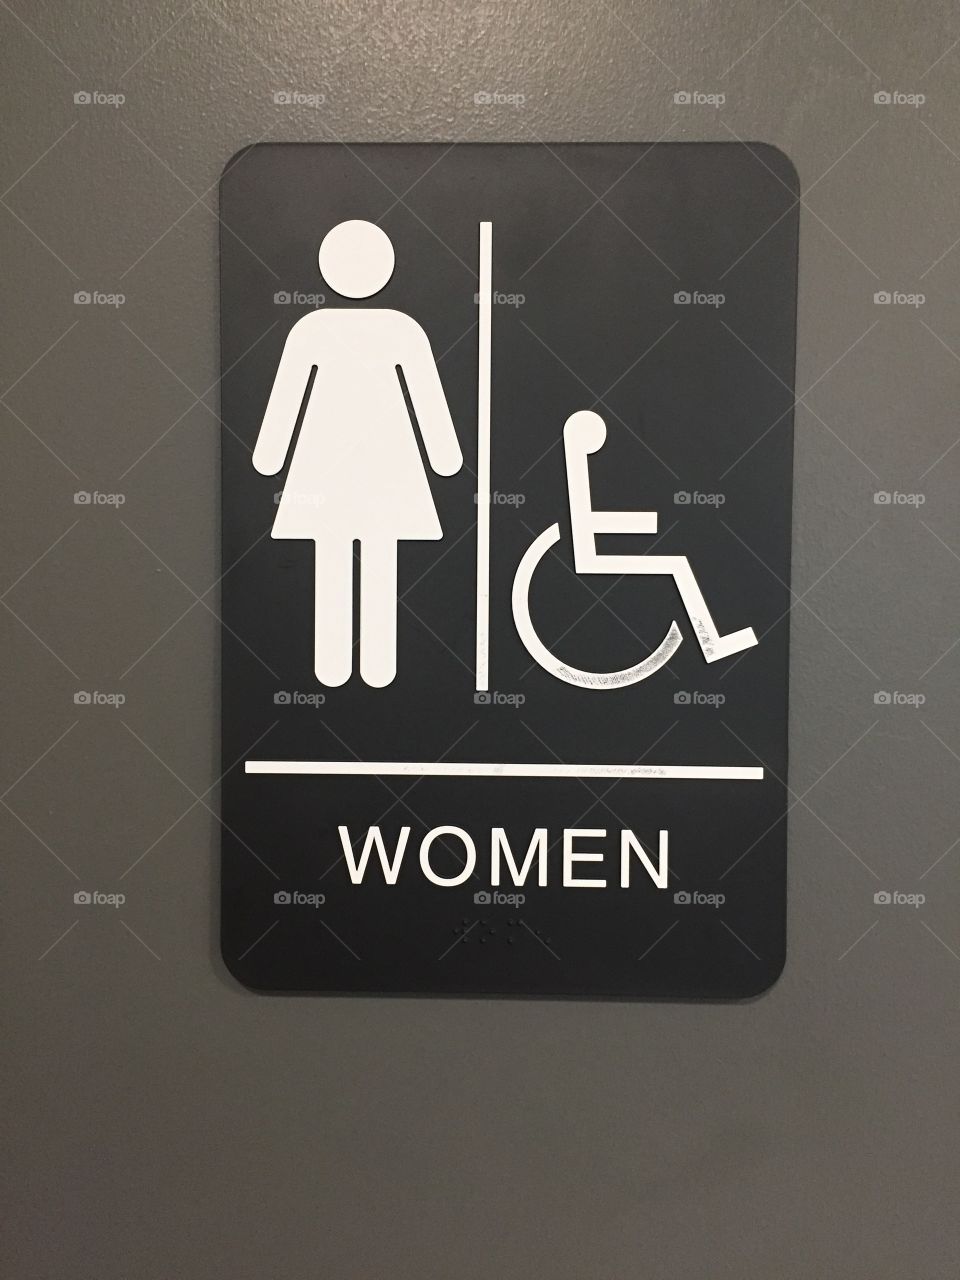 Sign for women's bathroom on a grey door. 